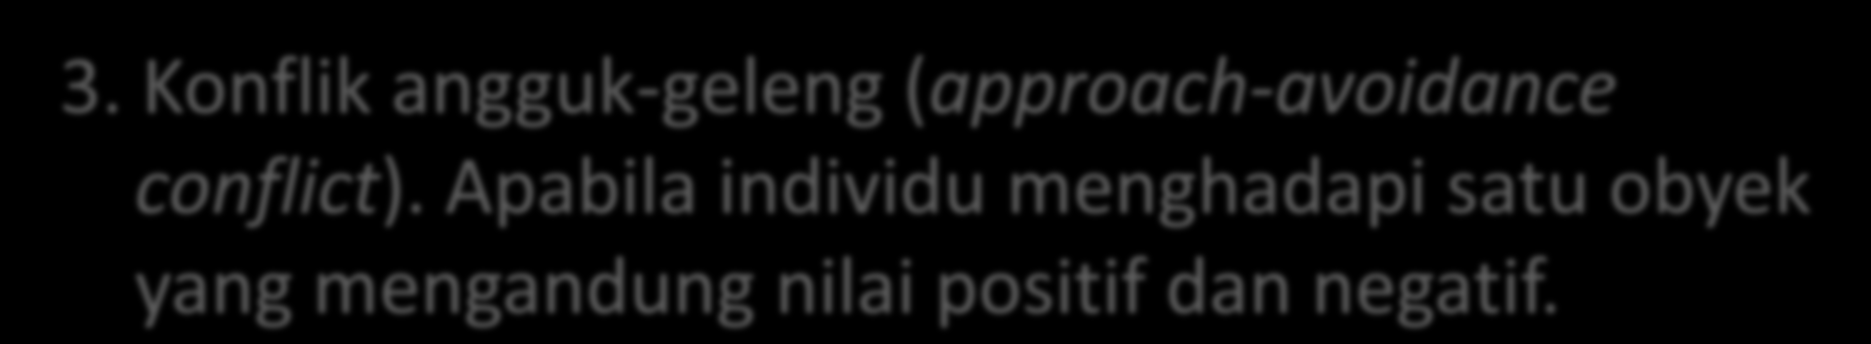 3. Konflik angguk-geleng (approach-avoidance conflict).